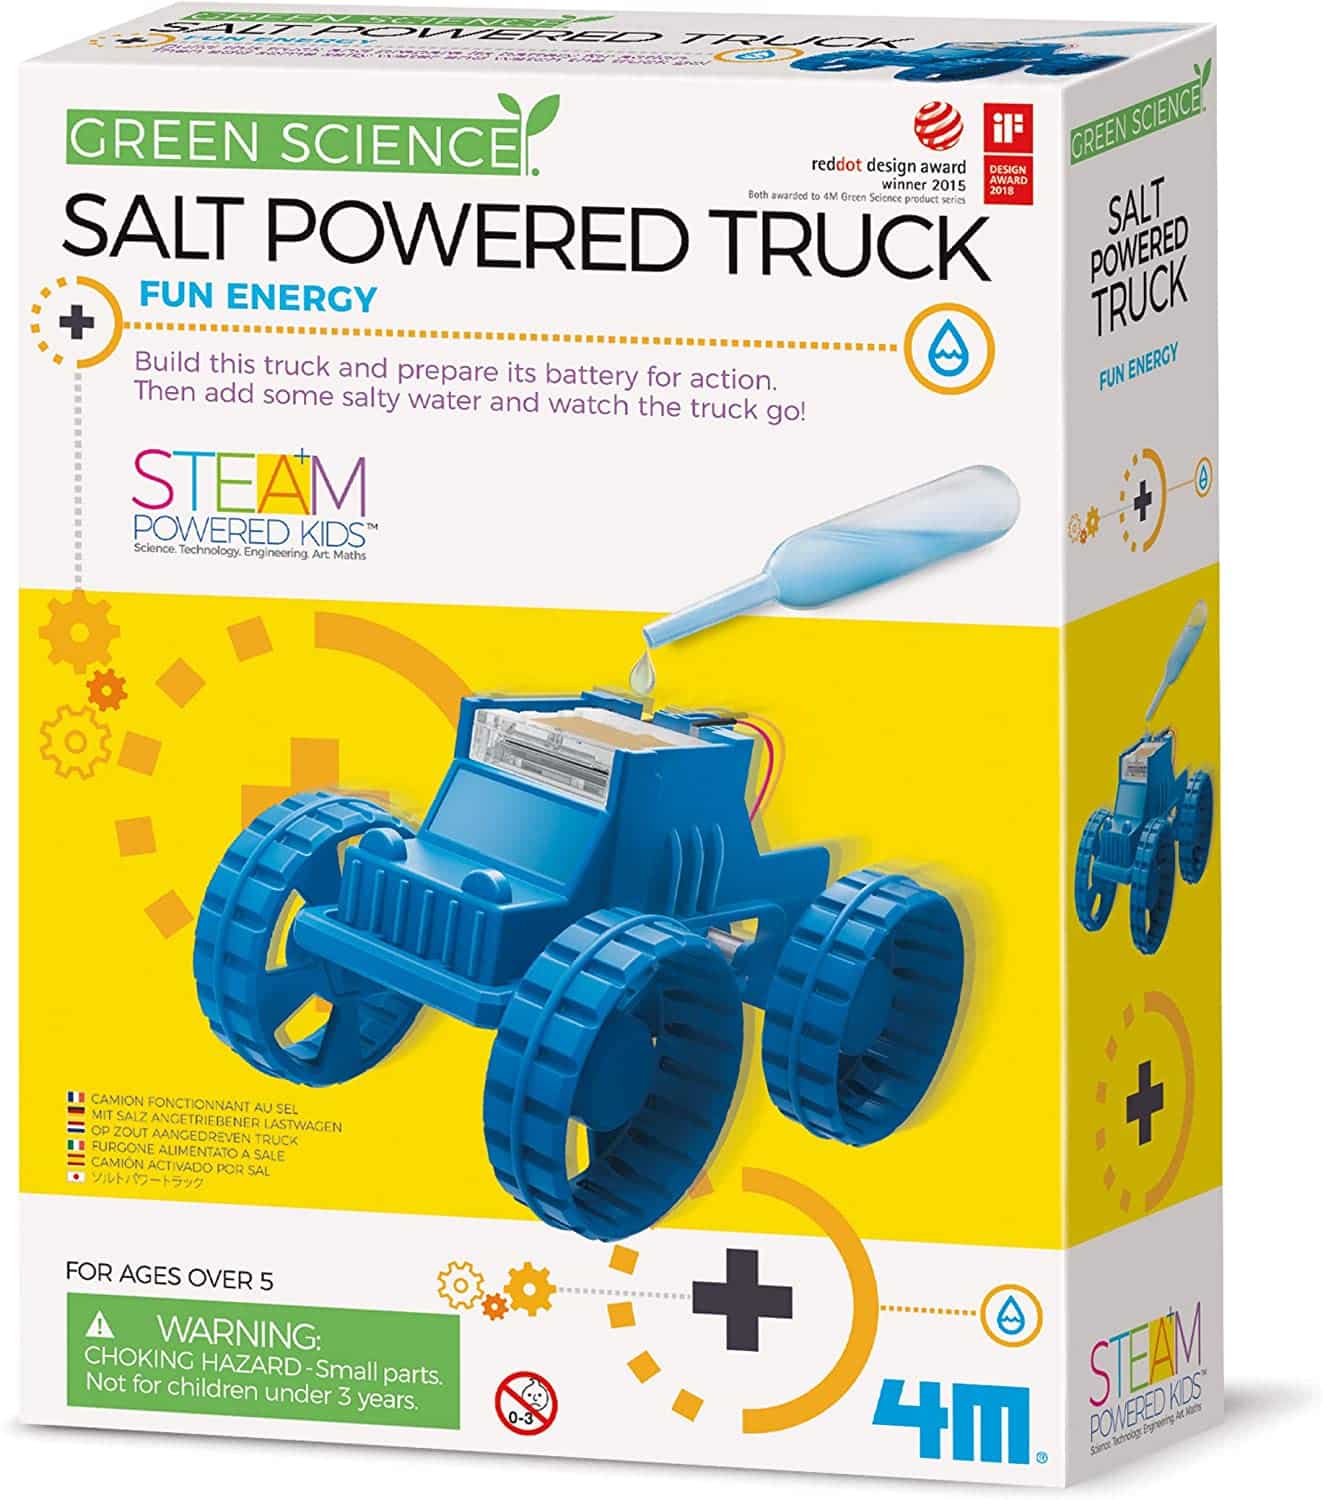 Green Science Salt Powered Truck